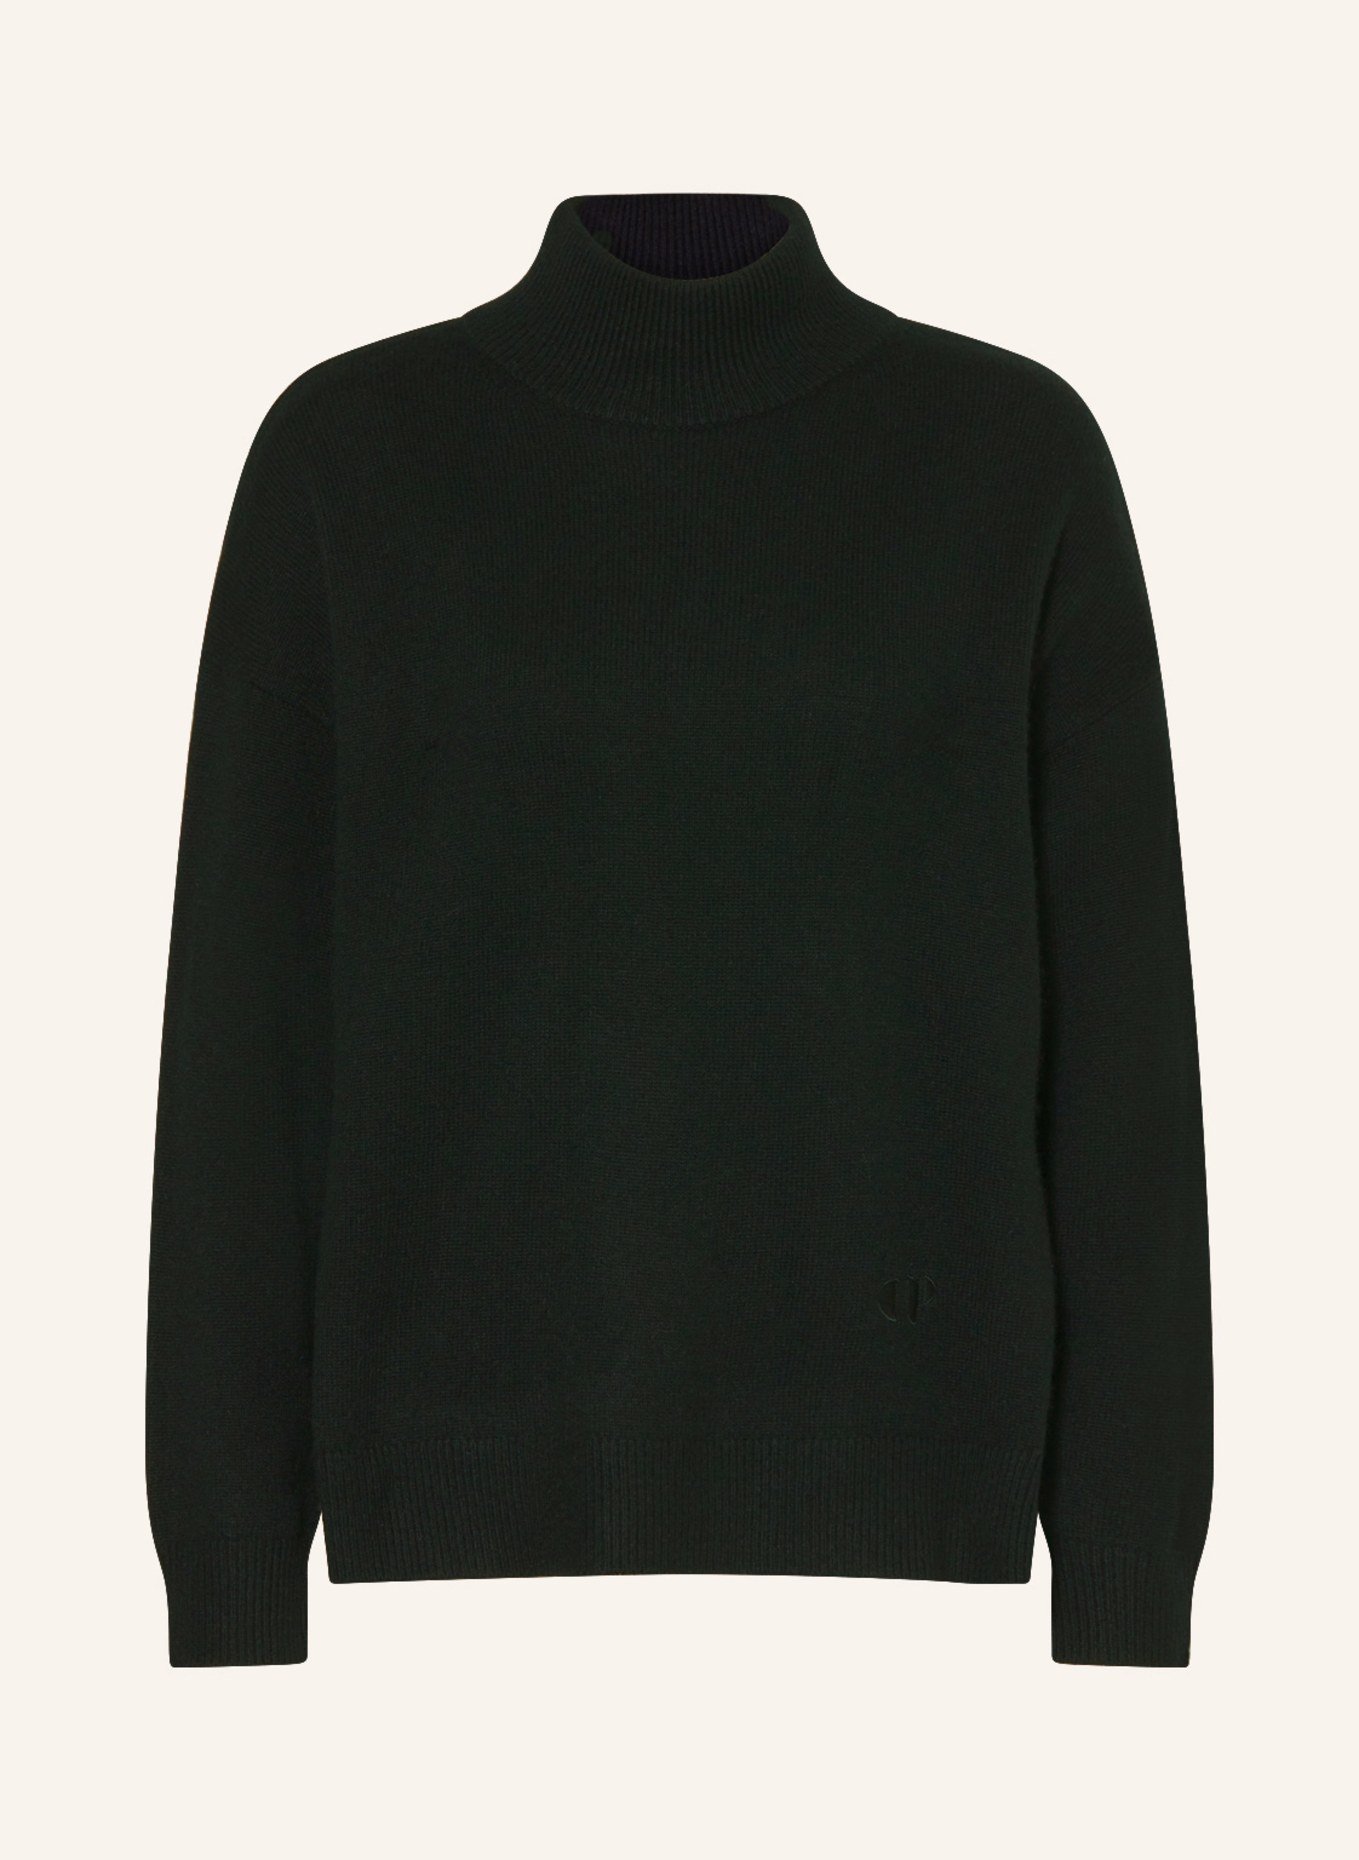 CLAUDIE PIERLOT Cashmere-Pullover, Farbe: SCHWARZ (Bild 1)